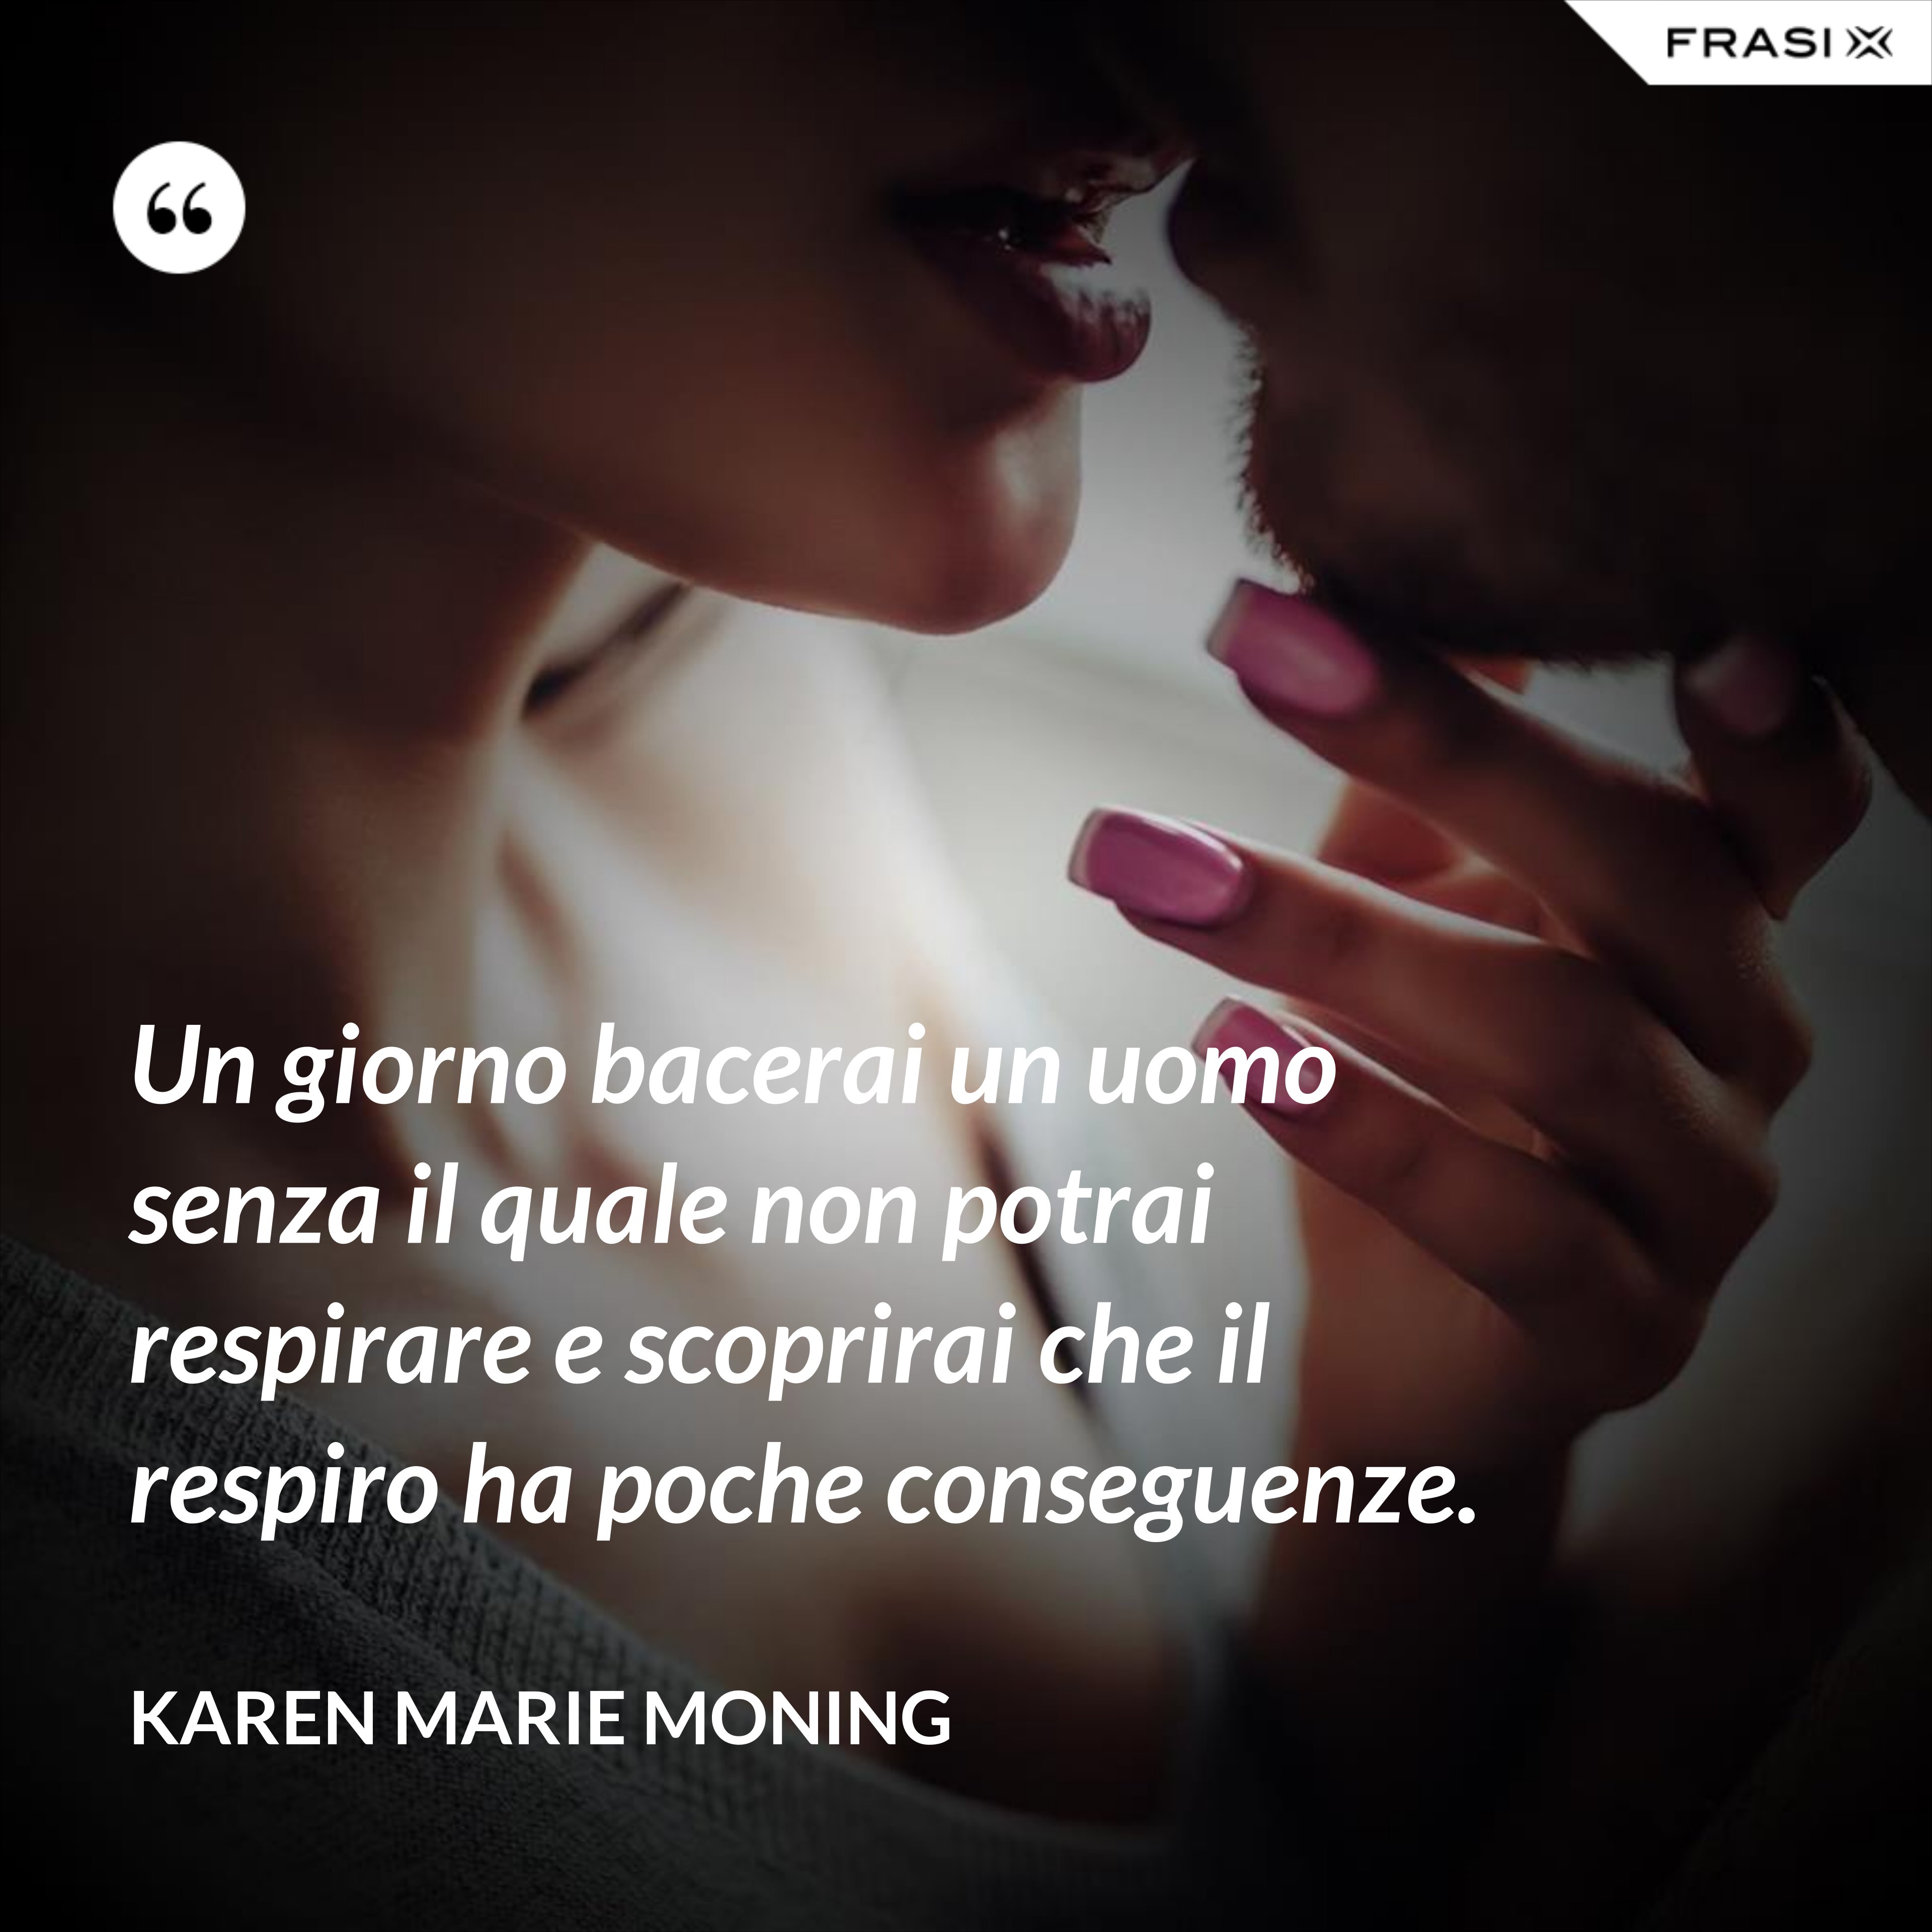 Un giorno bacerai un uomo senza il quale non potrai respirare e scoprirai che il respiro ha poche conseguenze. - Karen Marie Moning